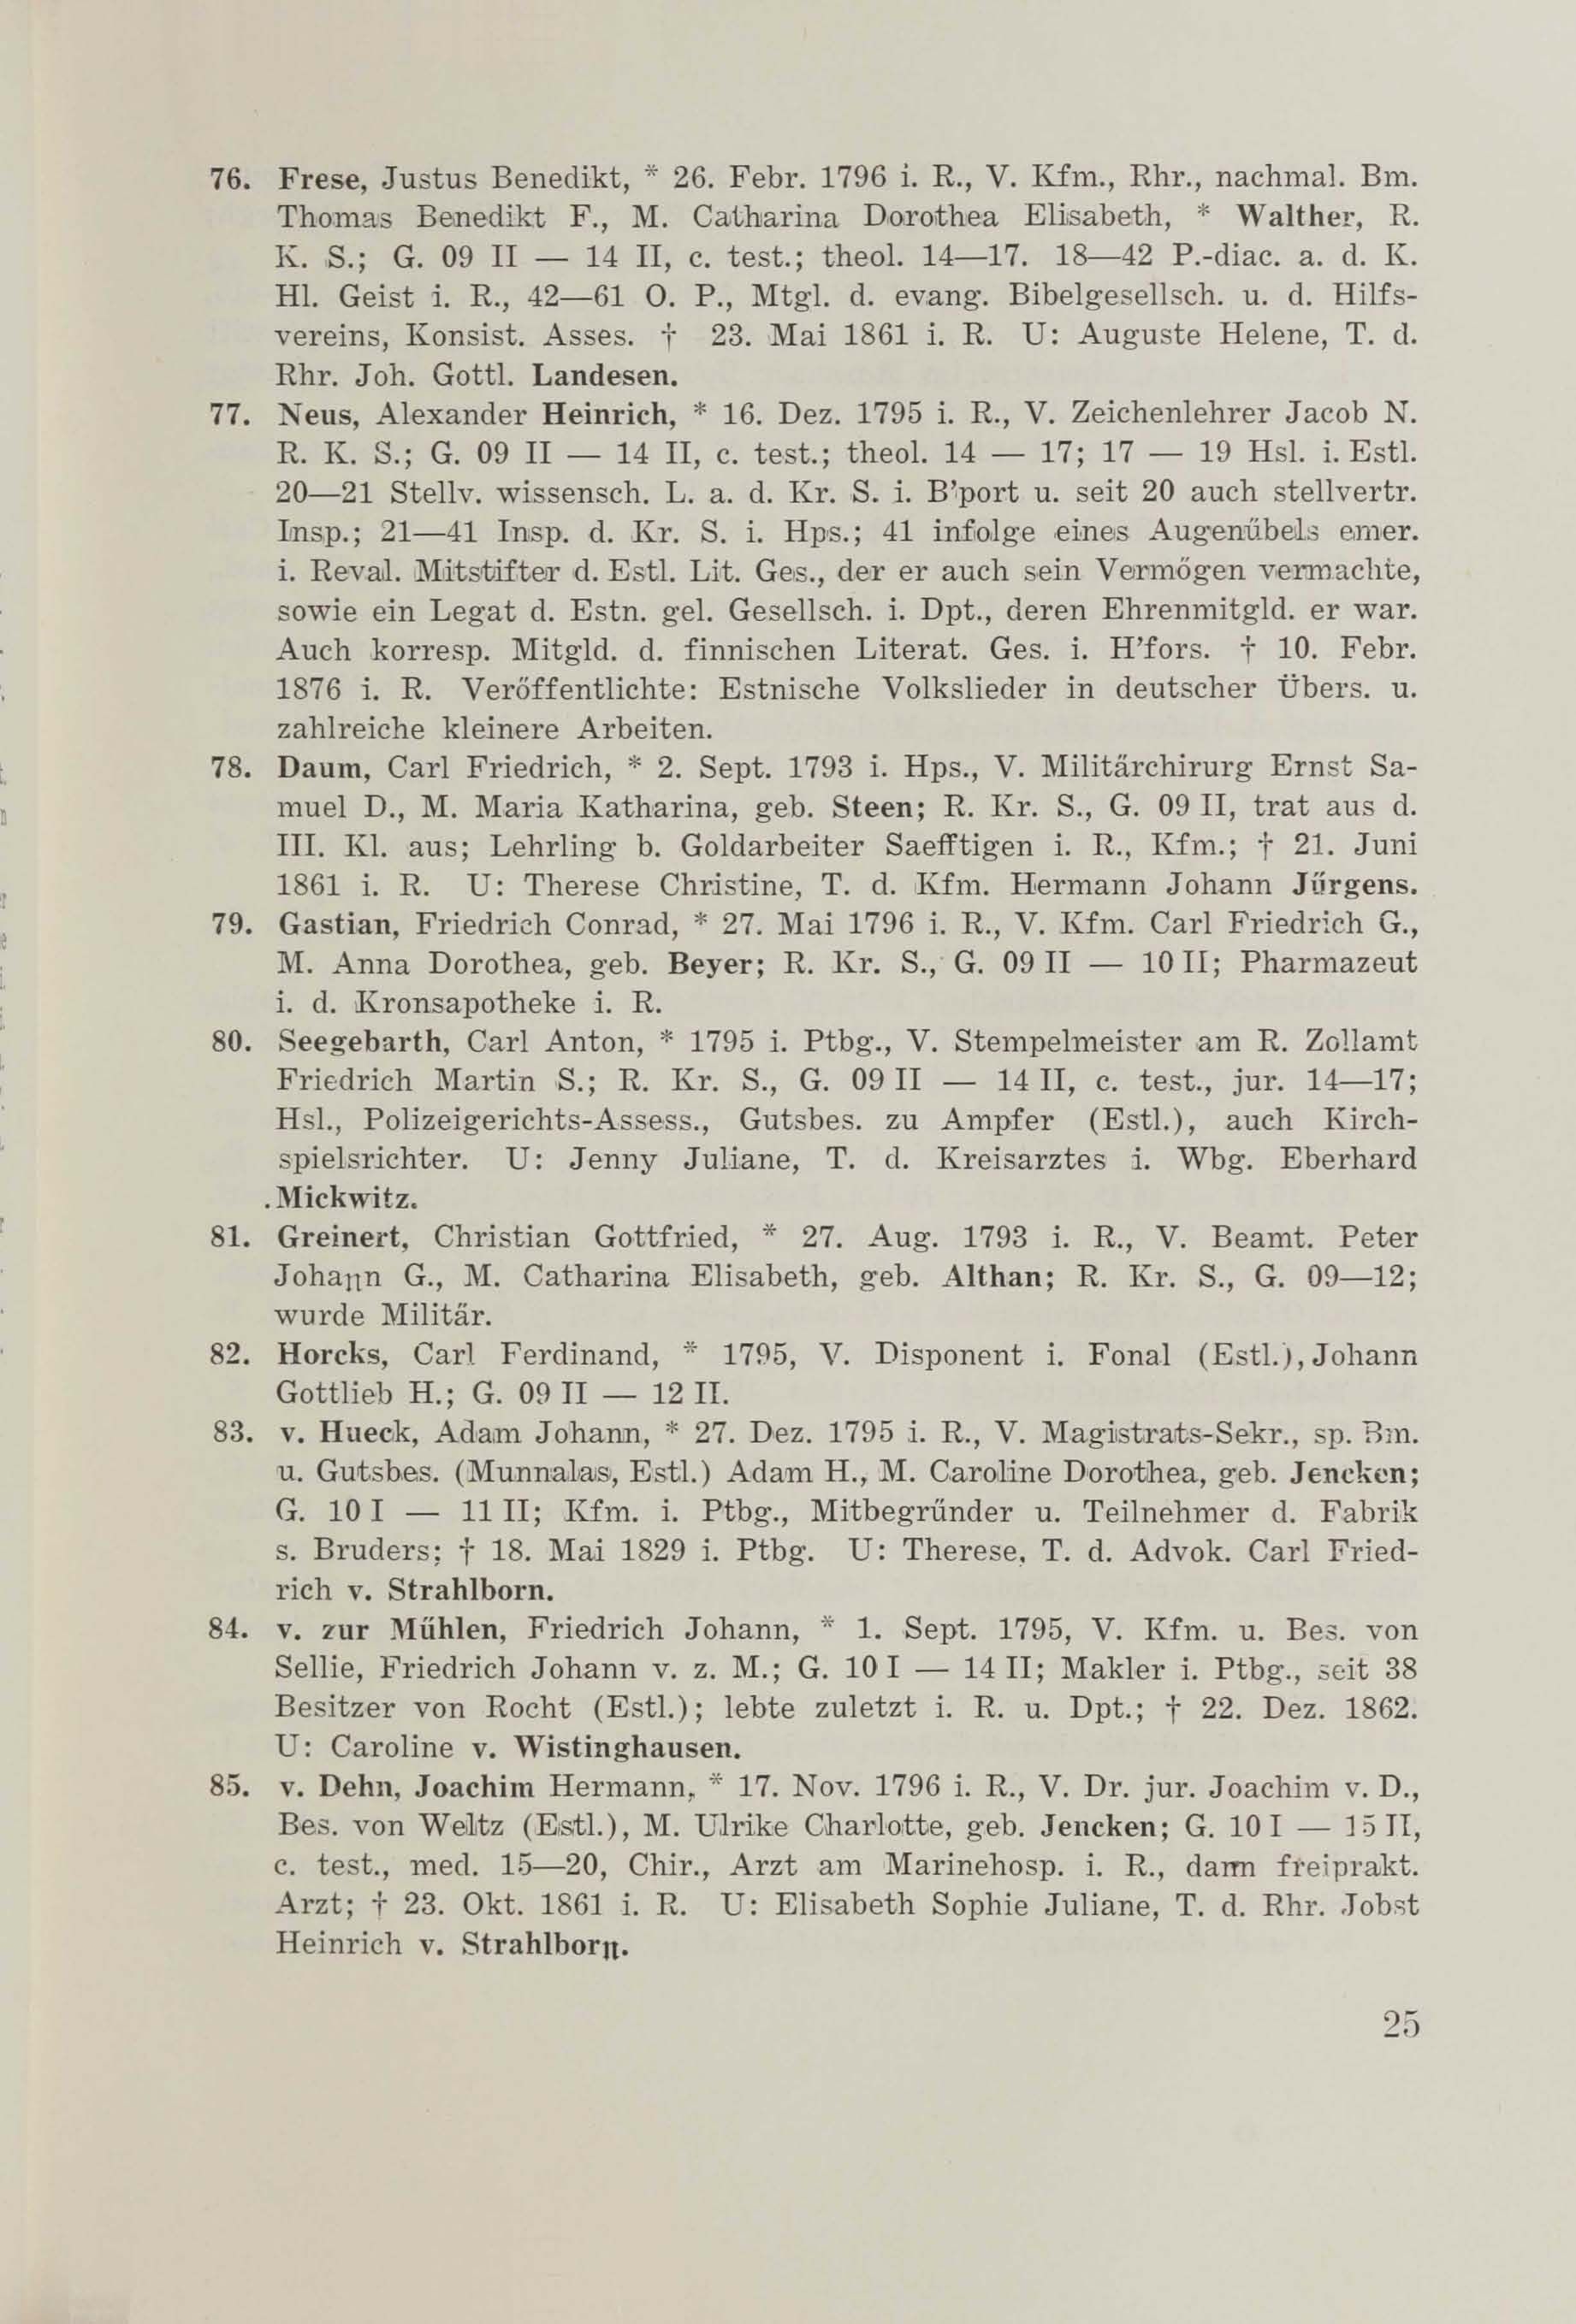 Schüler-Verzeichnis des Revalschen Gouvernements-Gymnasiums 1805–1890 (1931) | 35. (25) Main body of text